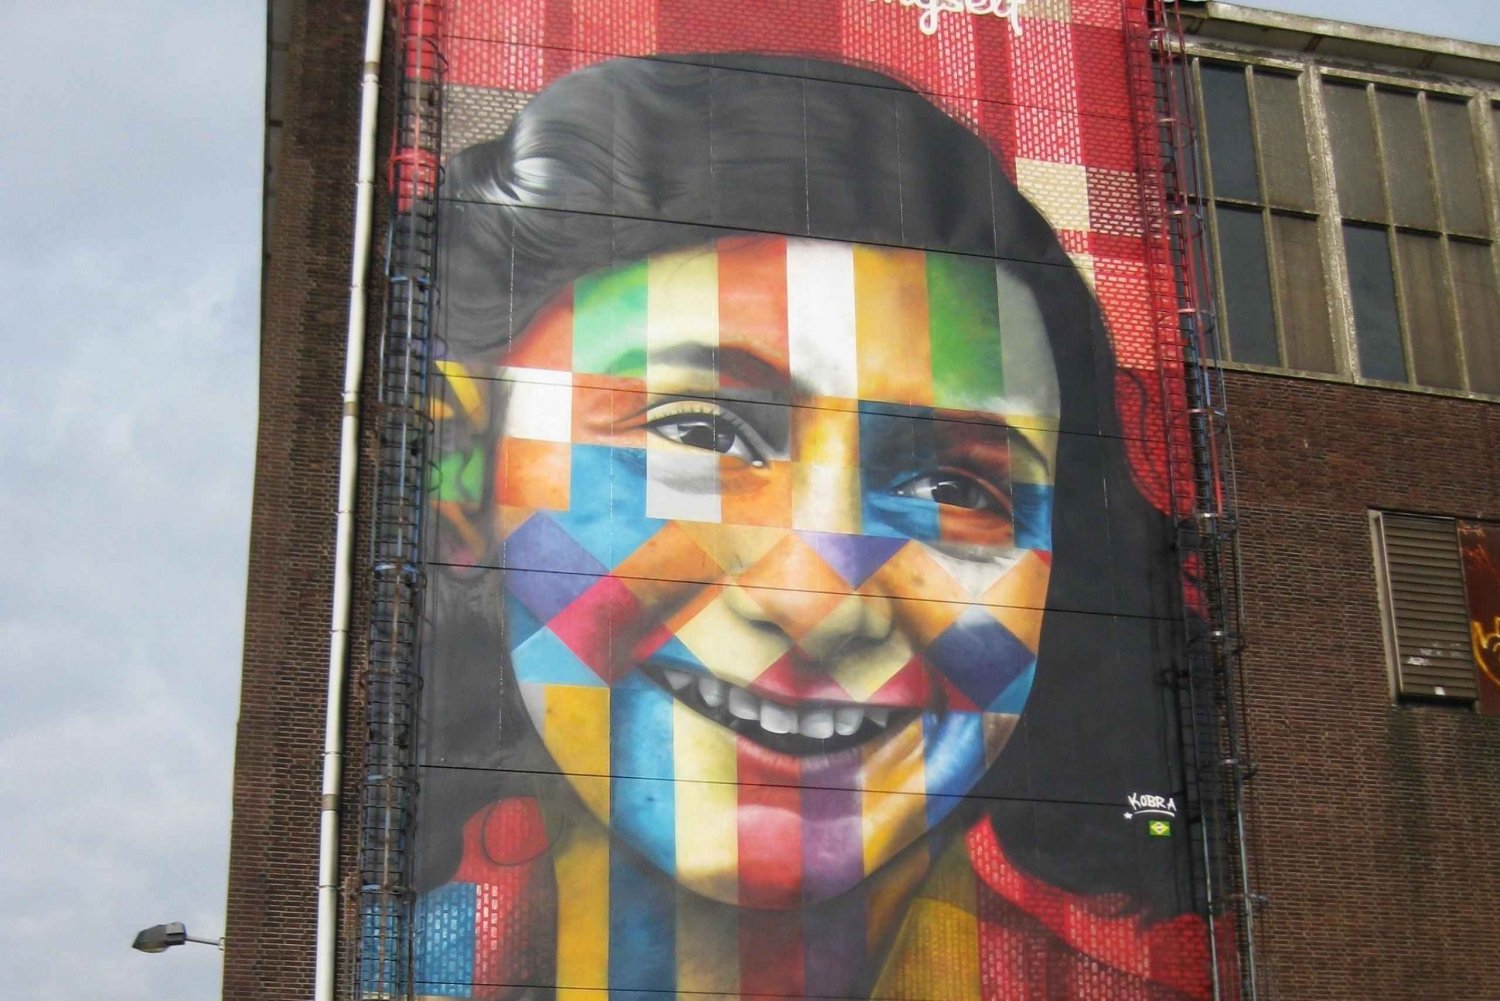 Amsterdam: Anne Frank vandringstur